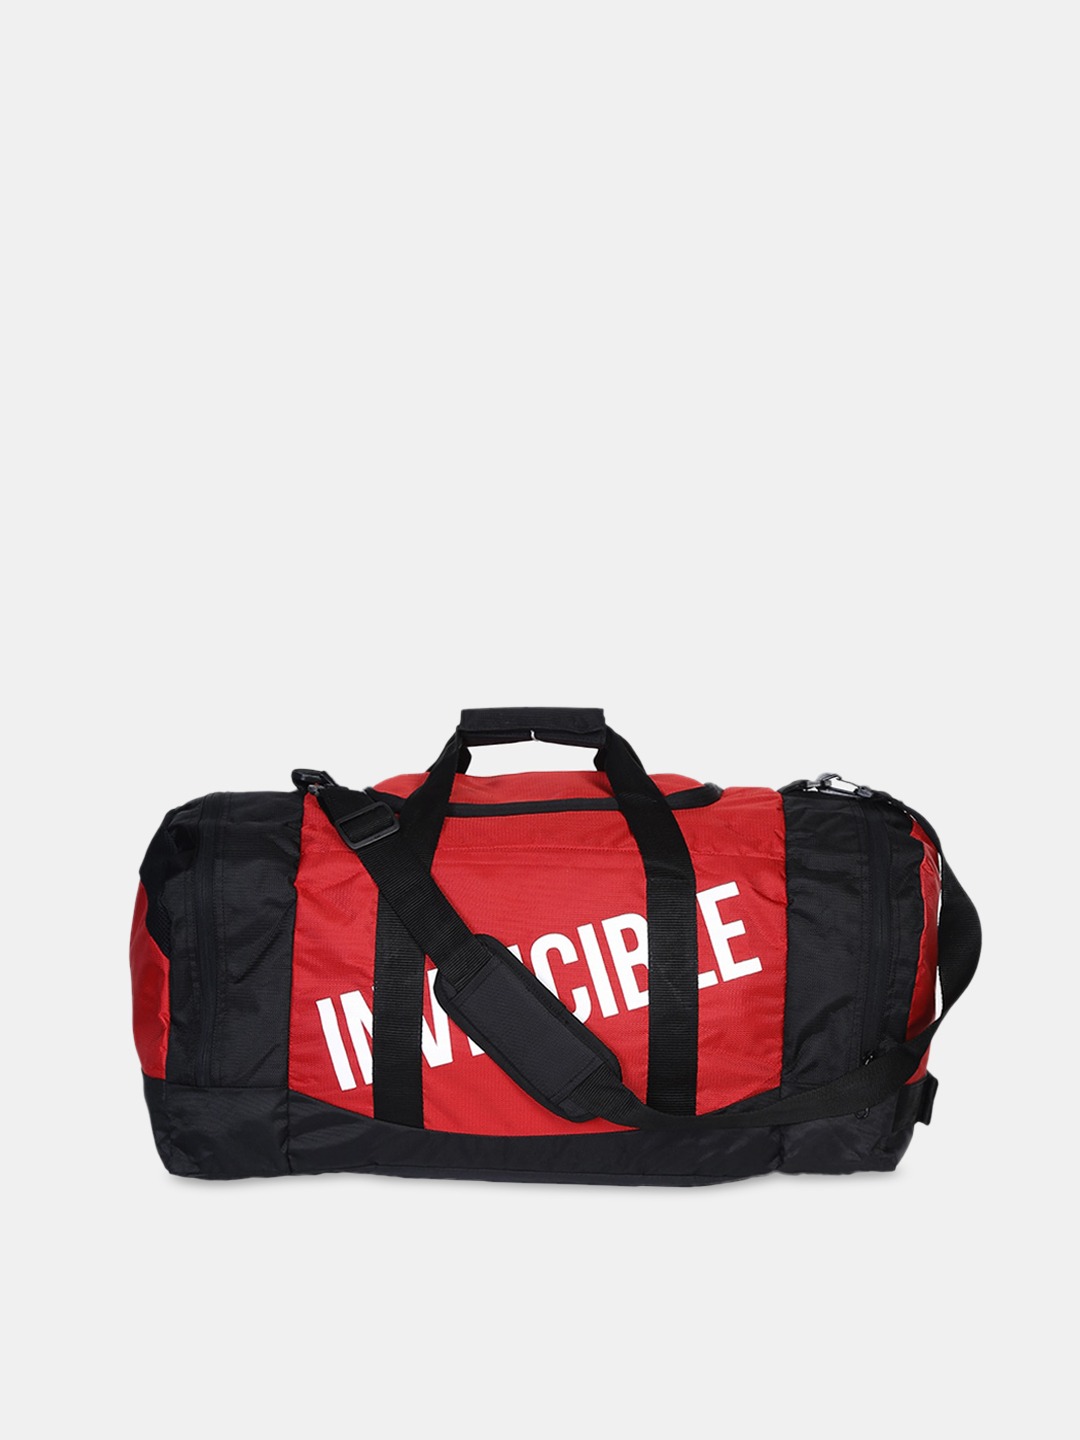 Accessories Duffel Bag | Invincible Red & Black Printed Large Duffle Bag 54 L - WS99311